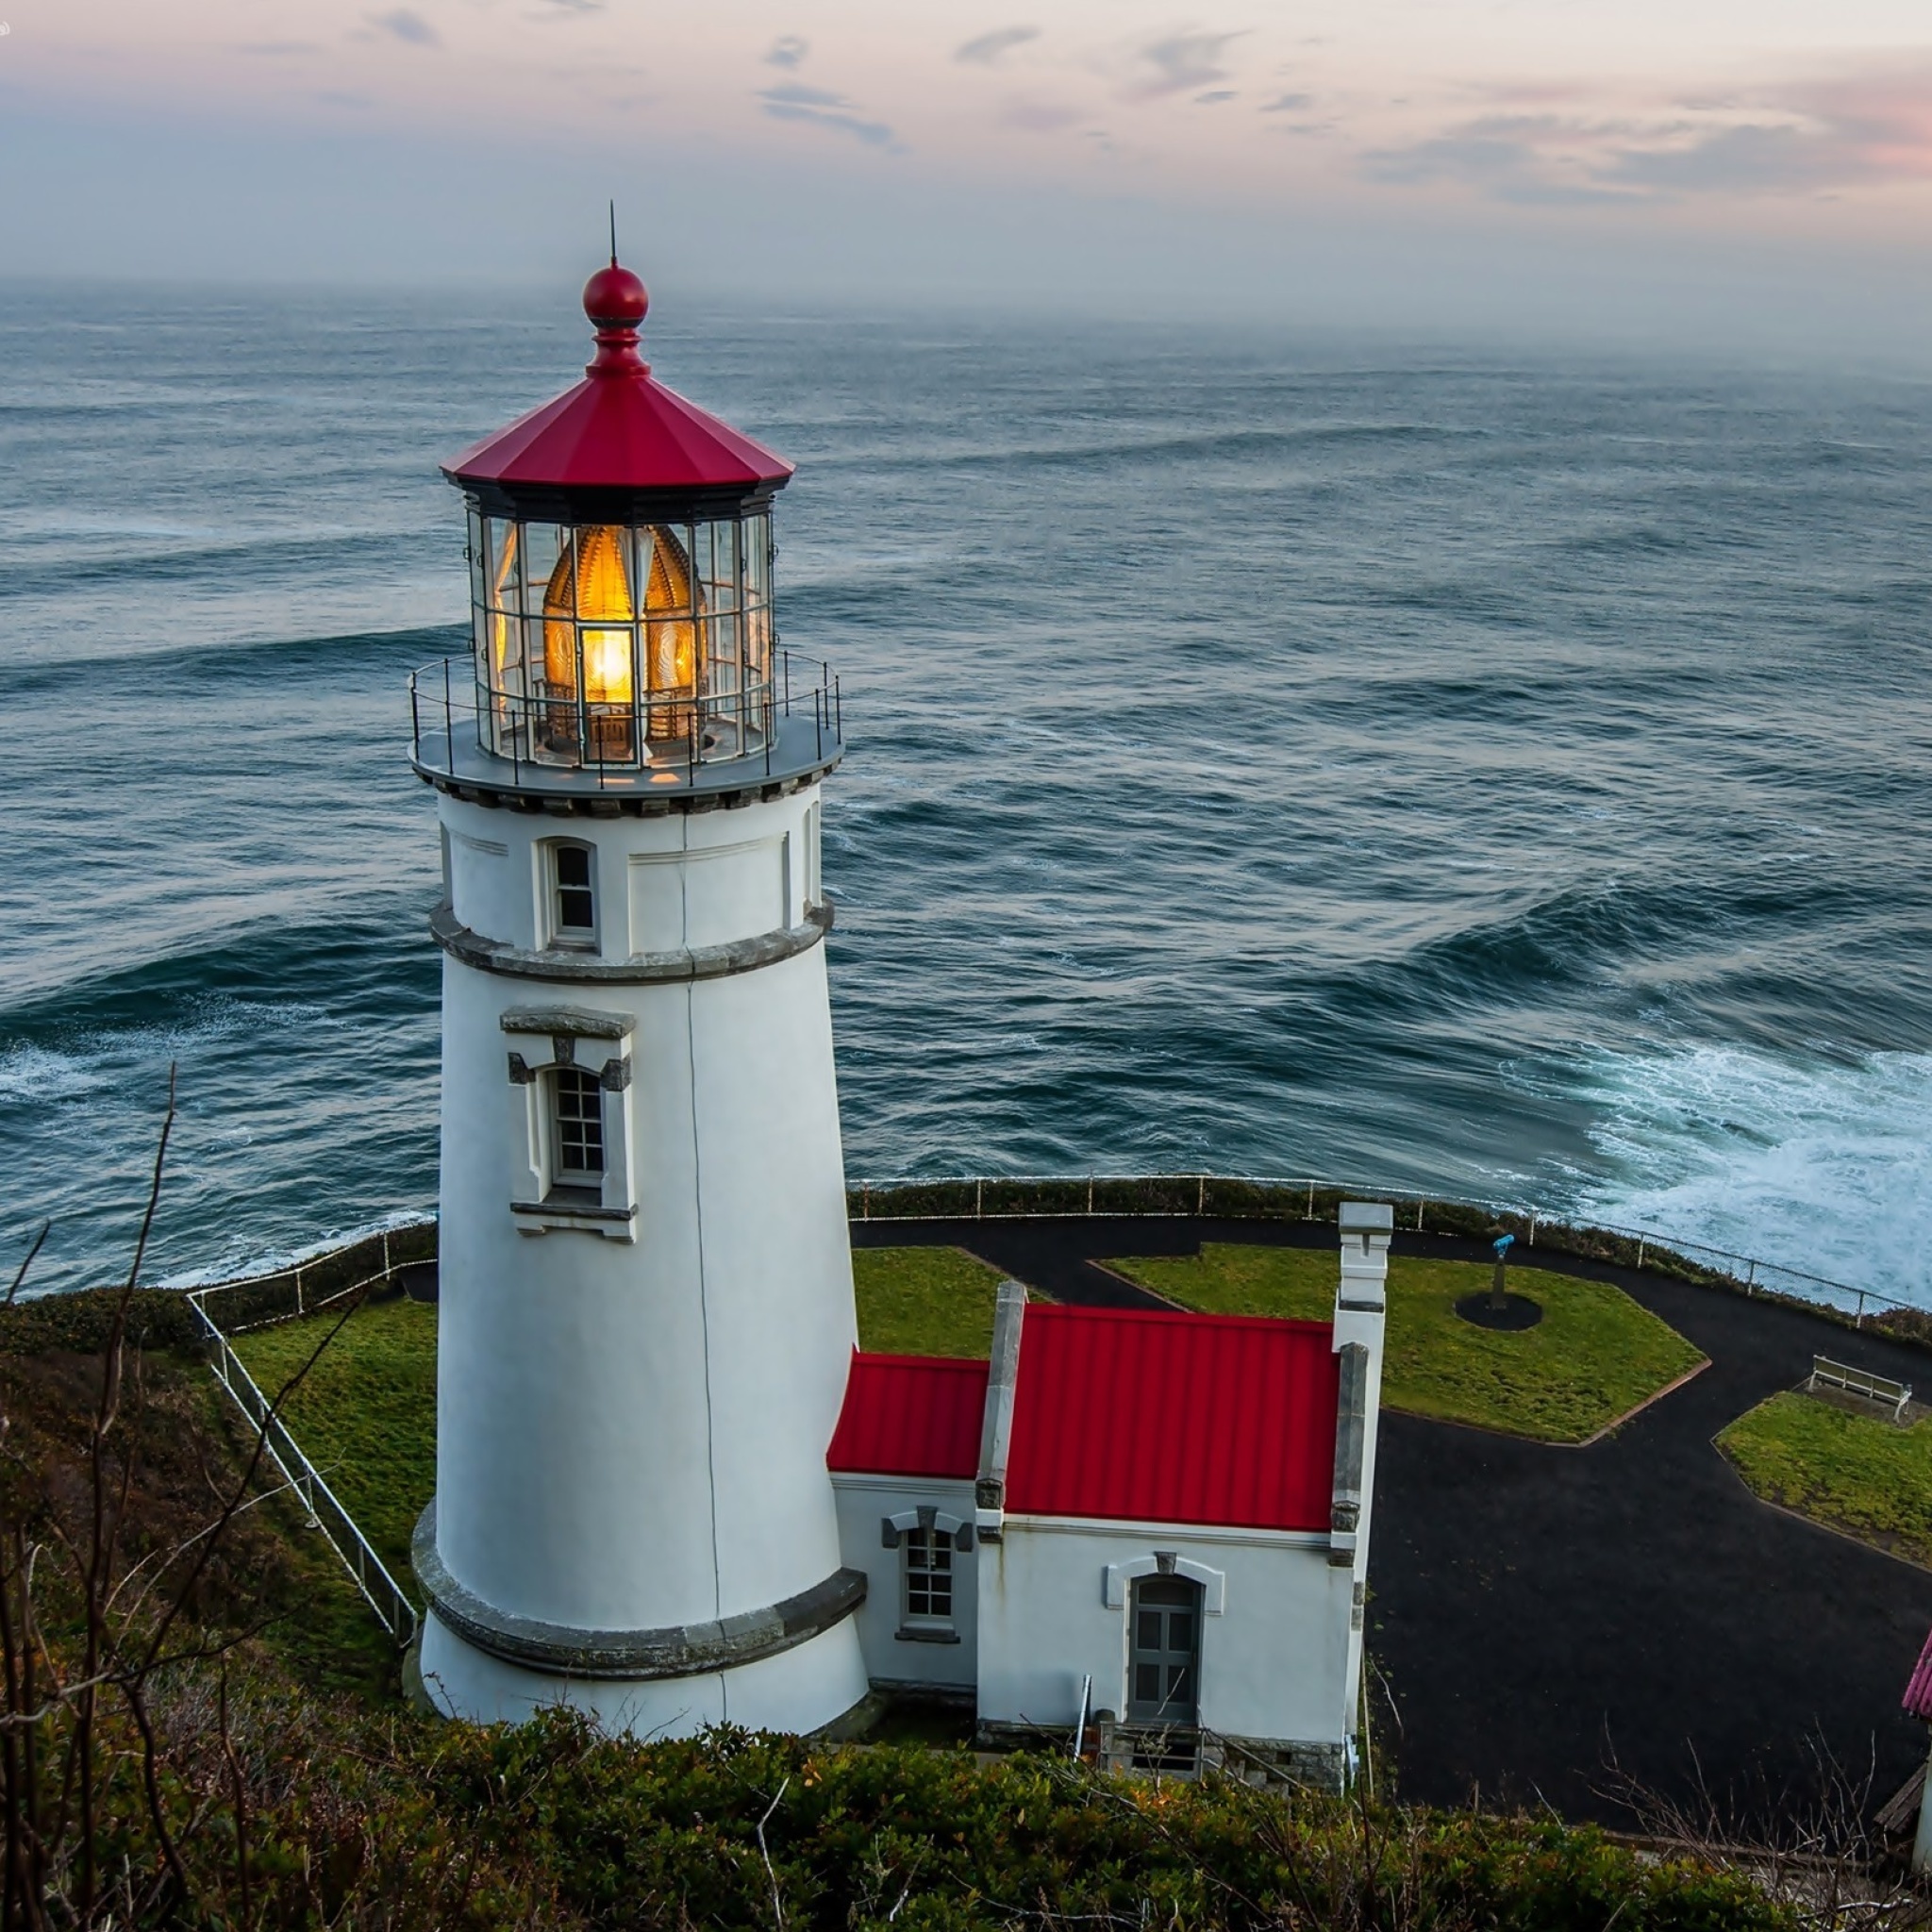 Sfondi Lighthouse at North Sea 2048x2048